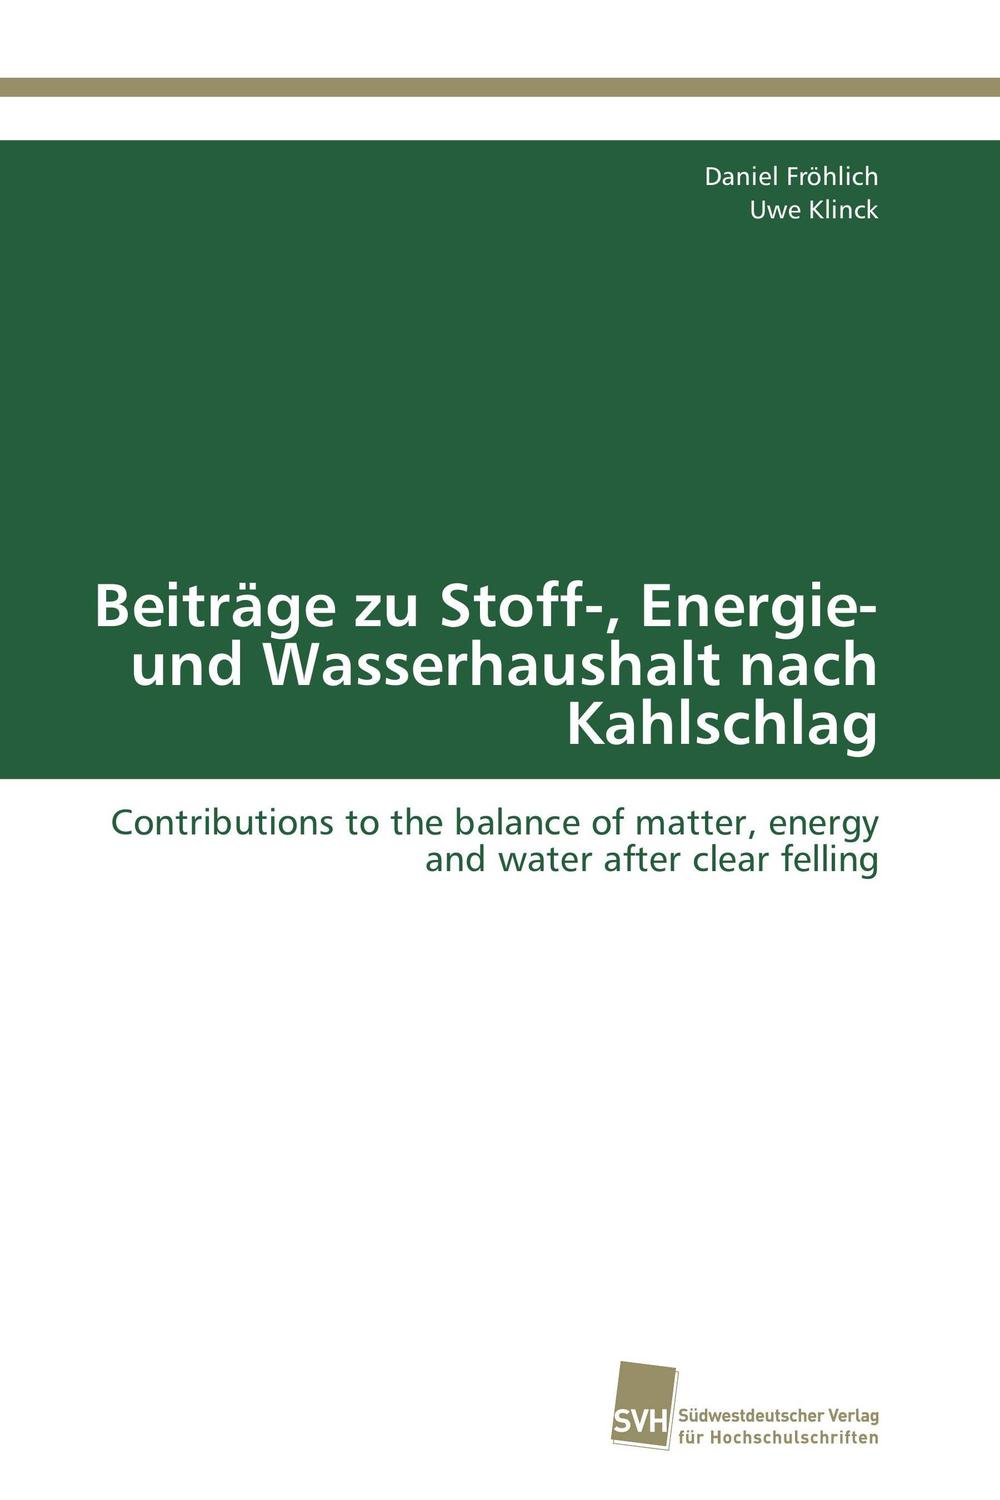 Beiträge zu Stoff-, Energie- und Wasserhaushalt nach Kahlschlag - Daniel Fröhlich, Uwe Klinck